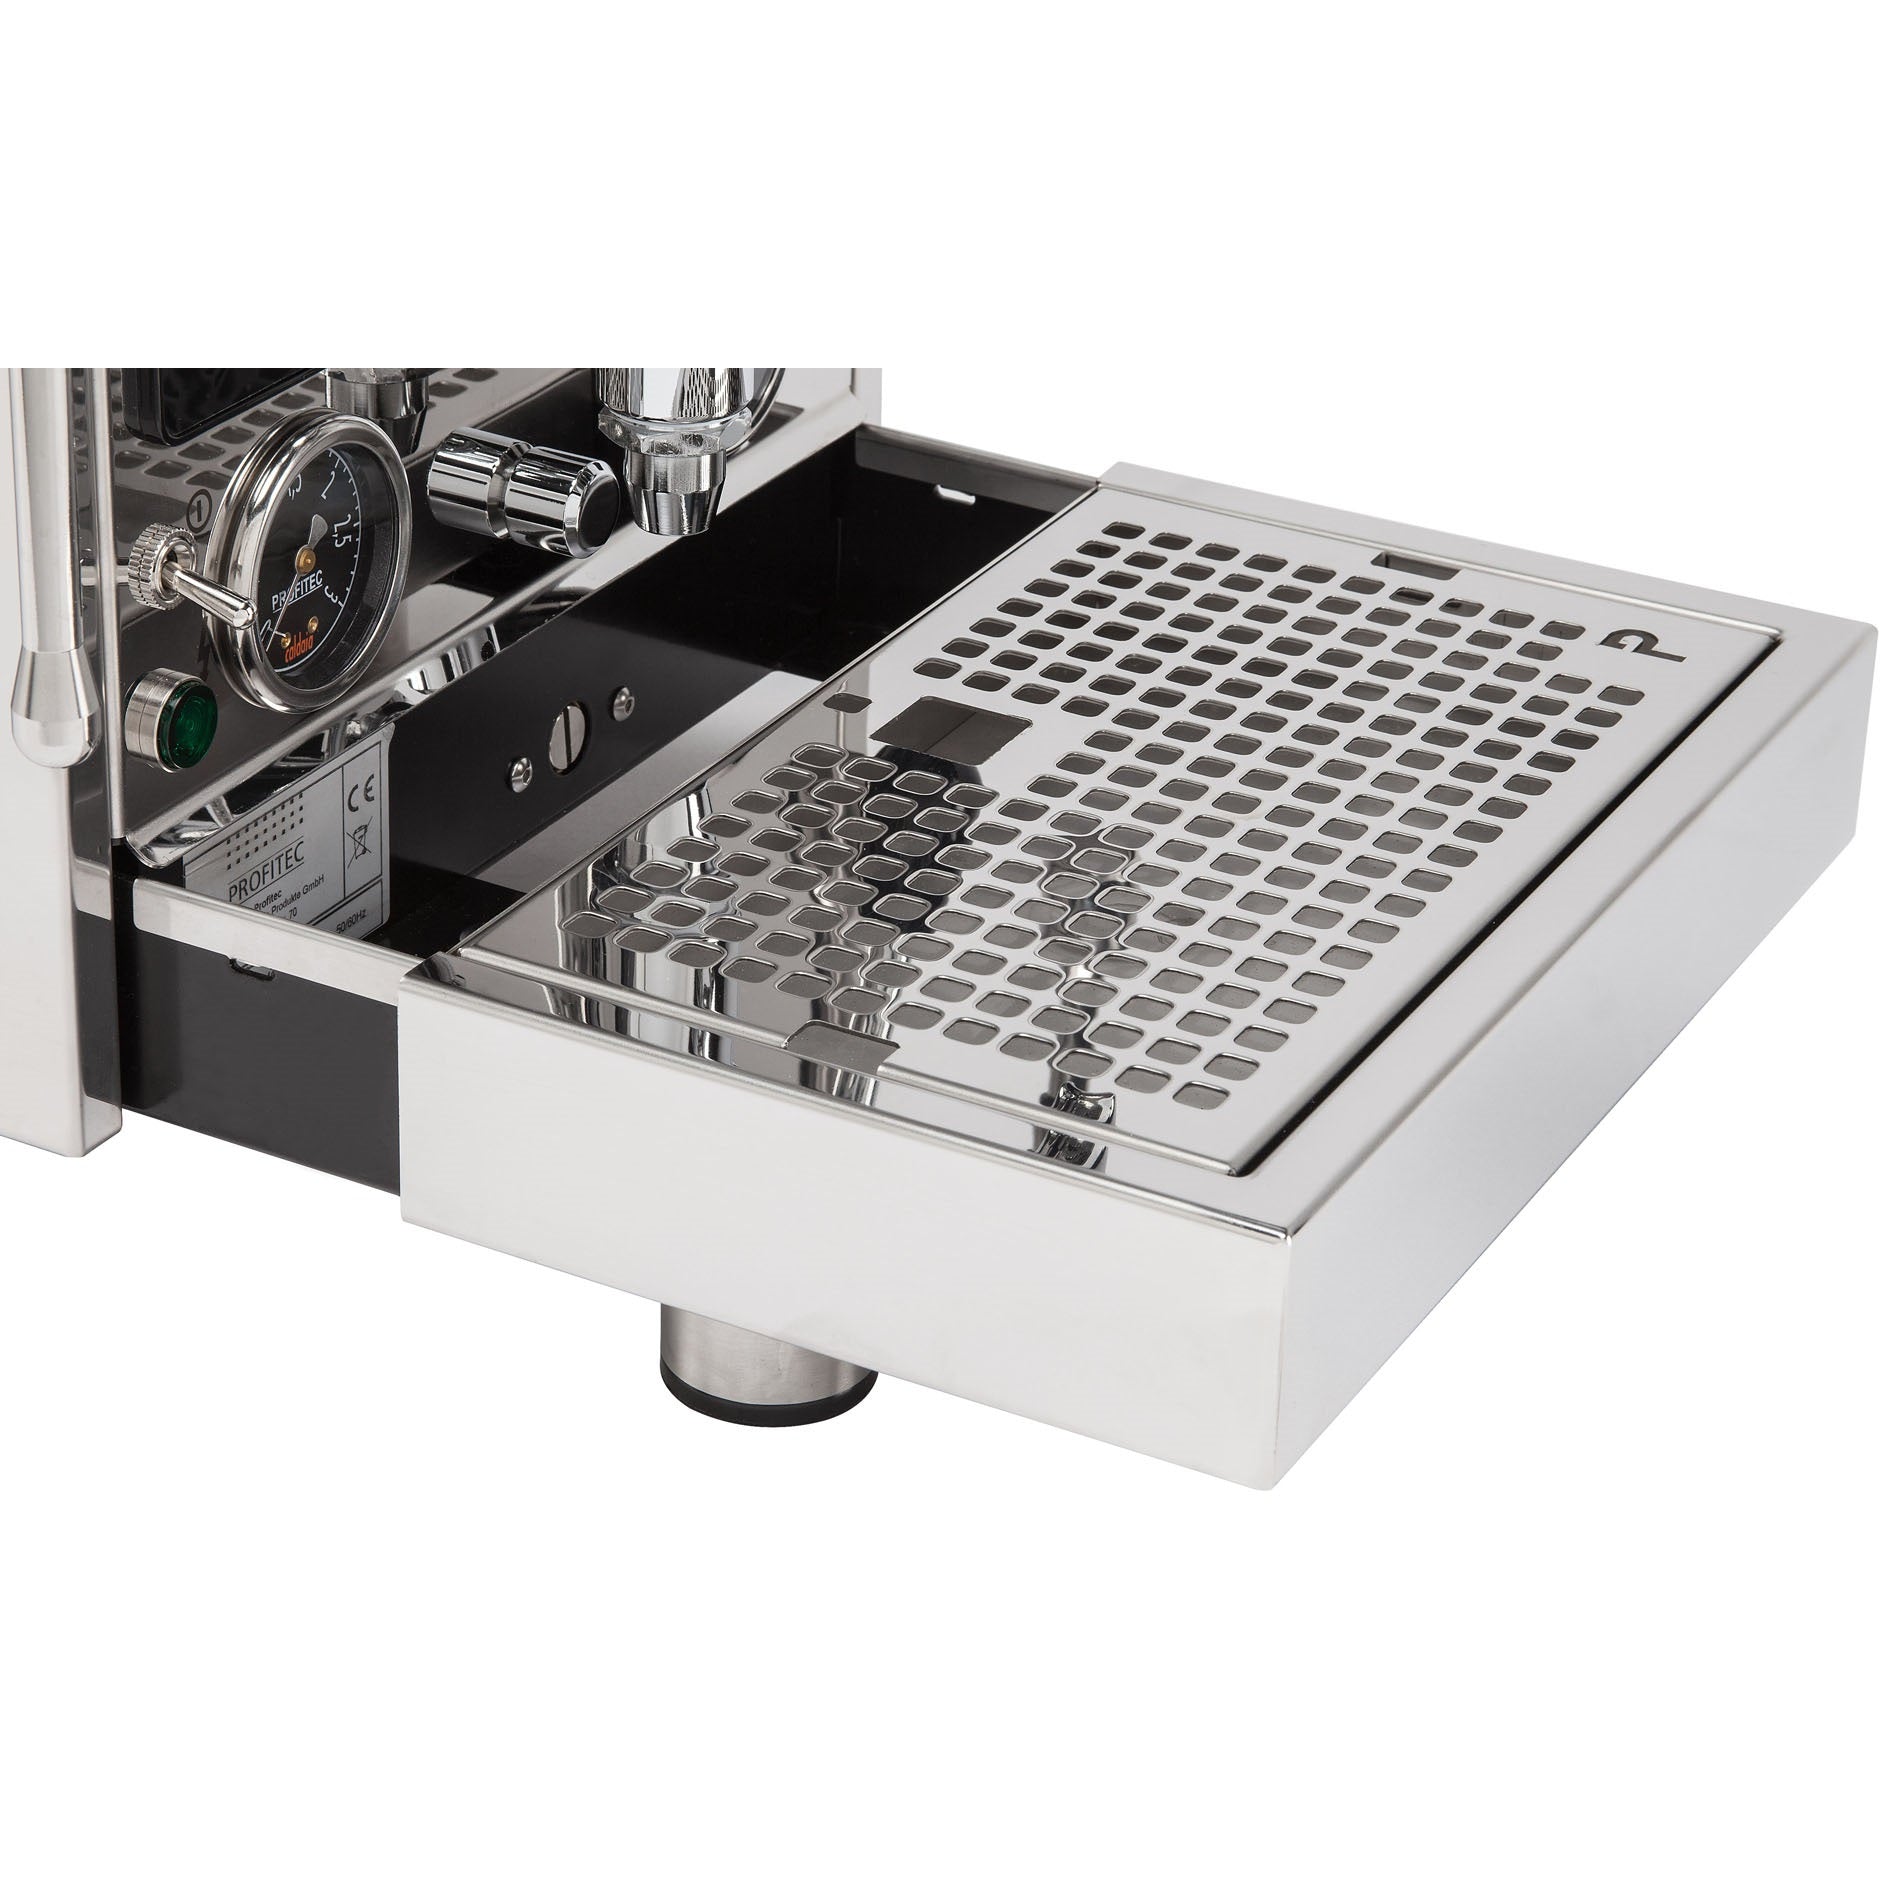 Profitec Pro 600 PID Espresso Machine